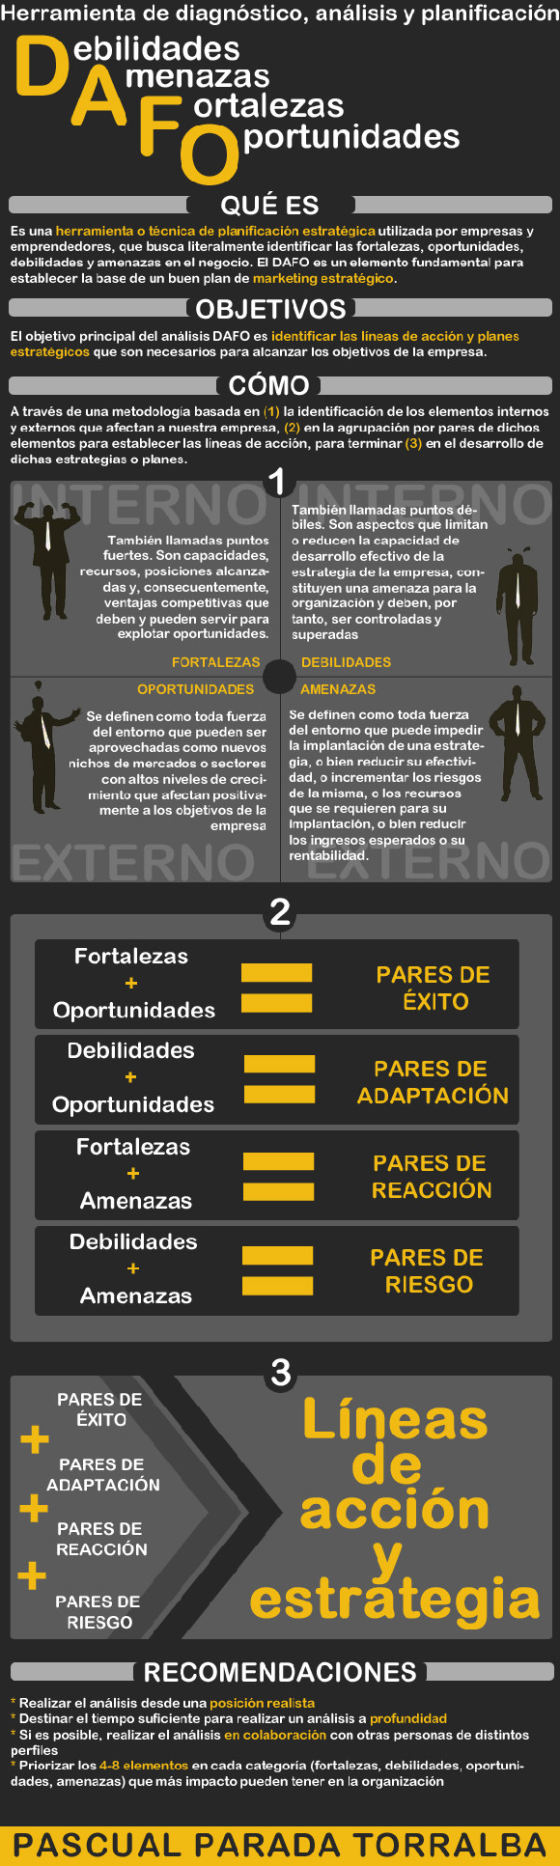 Infografía_Emprendedores_Dafo-1